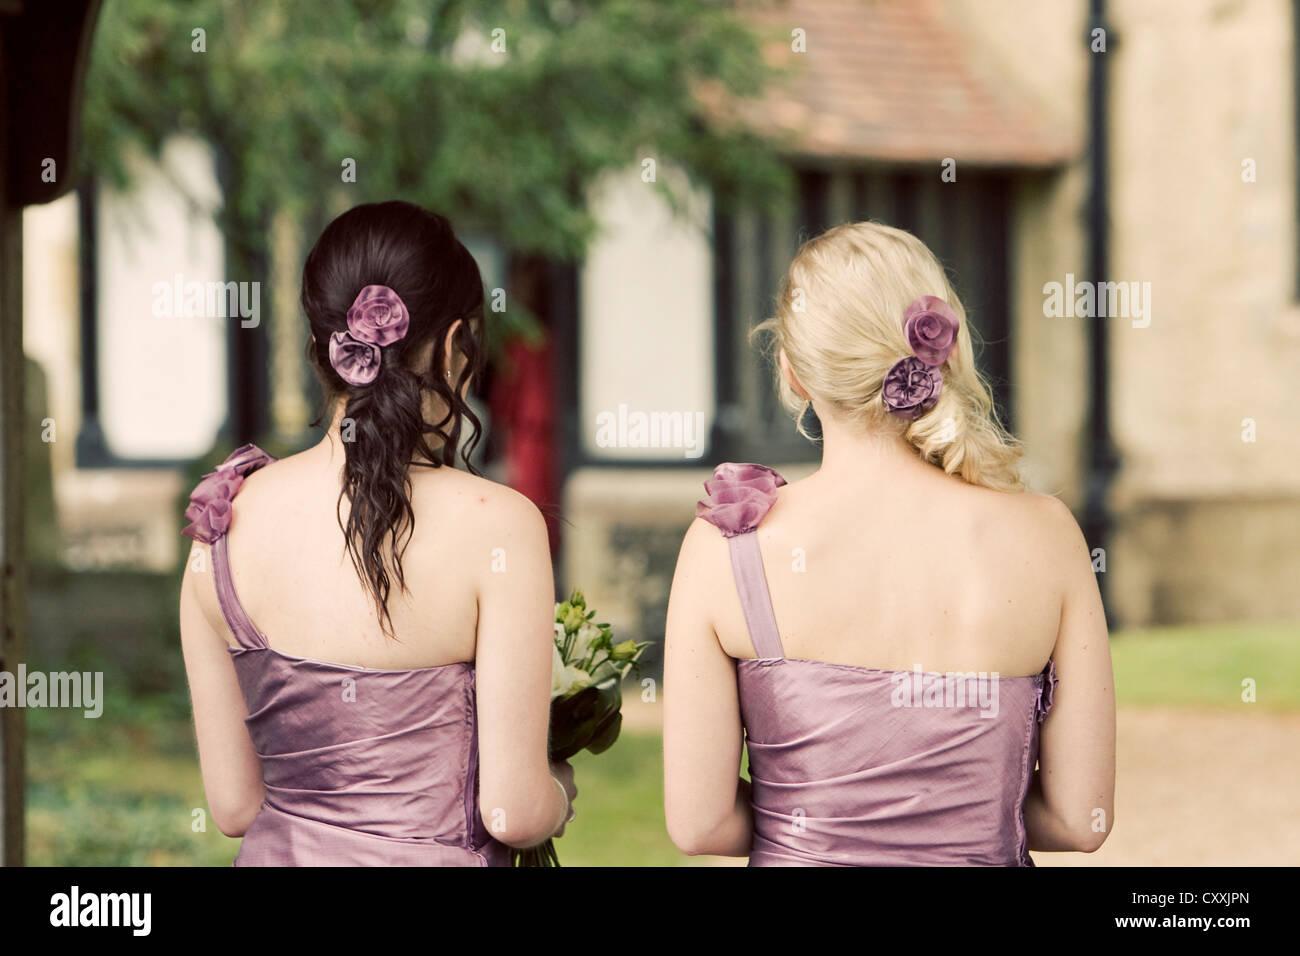 Deux demoiselles photographiées par derrière en porter un bracelet violet sombre des robes et des fleurs dans leurs cheveux Banque D'Images